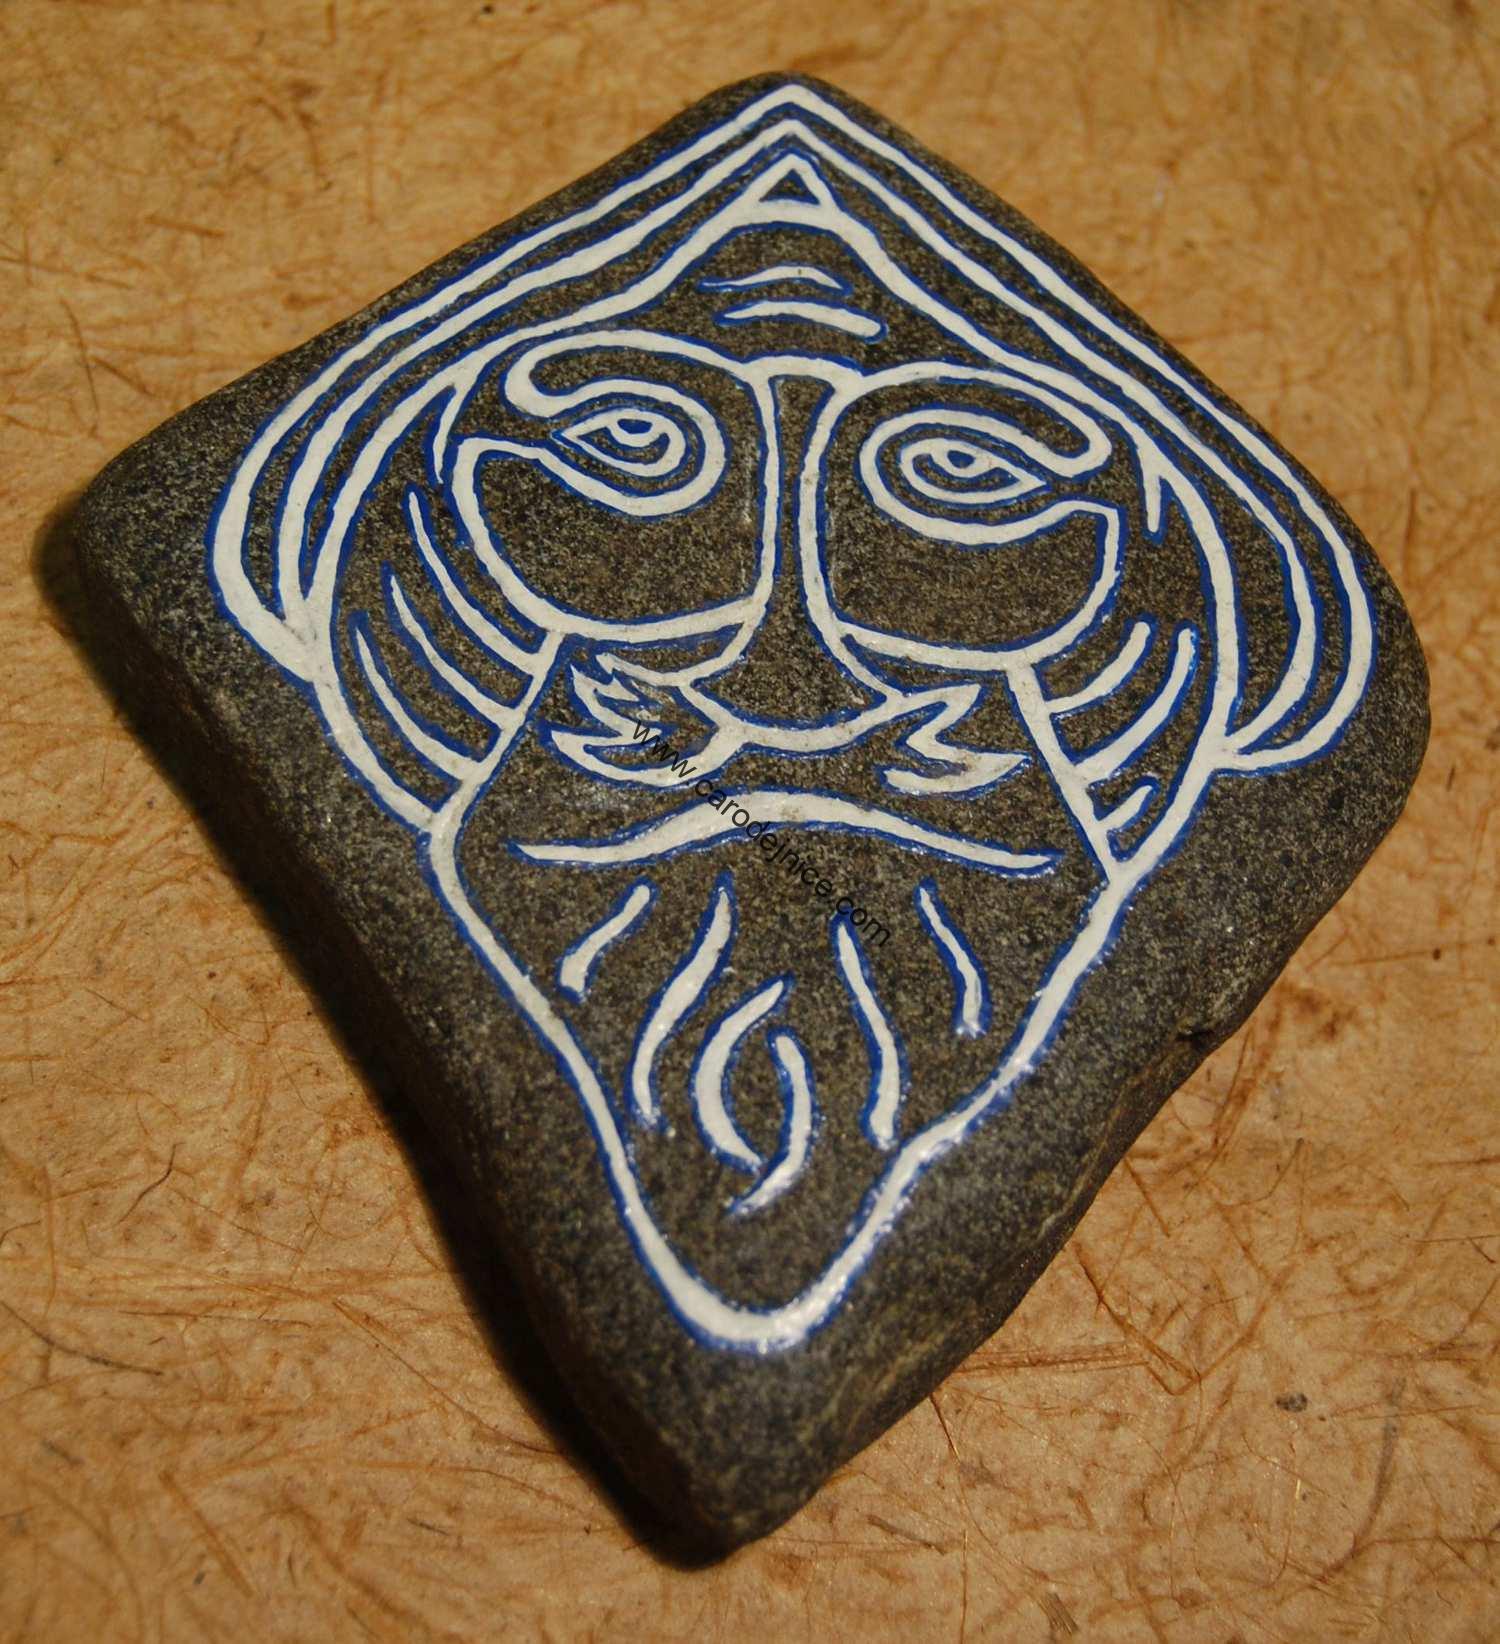 Odin zpodobnění na kameni  